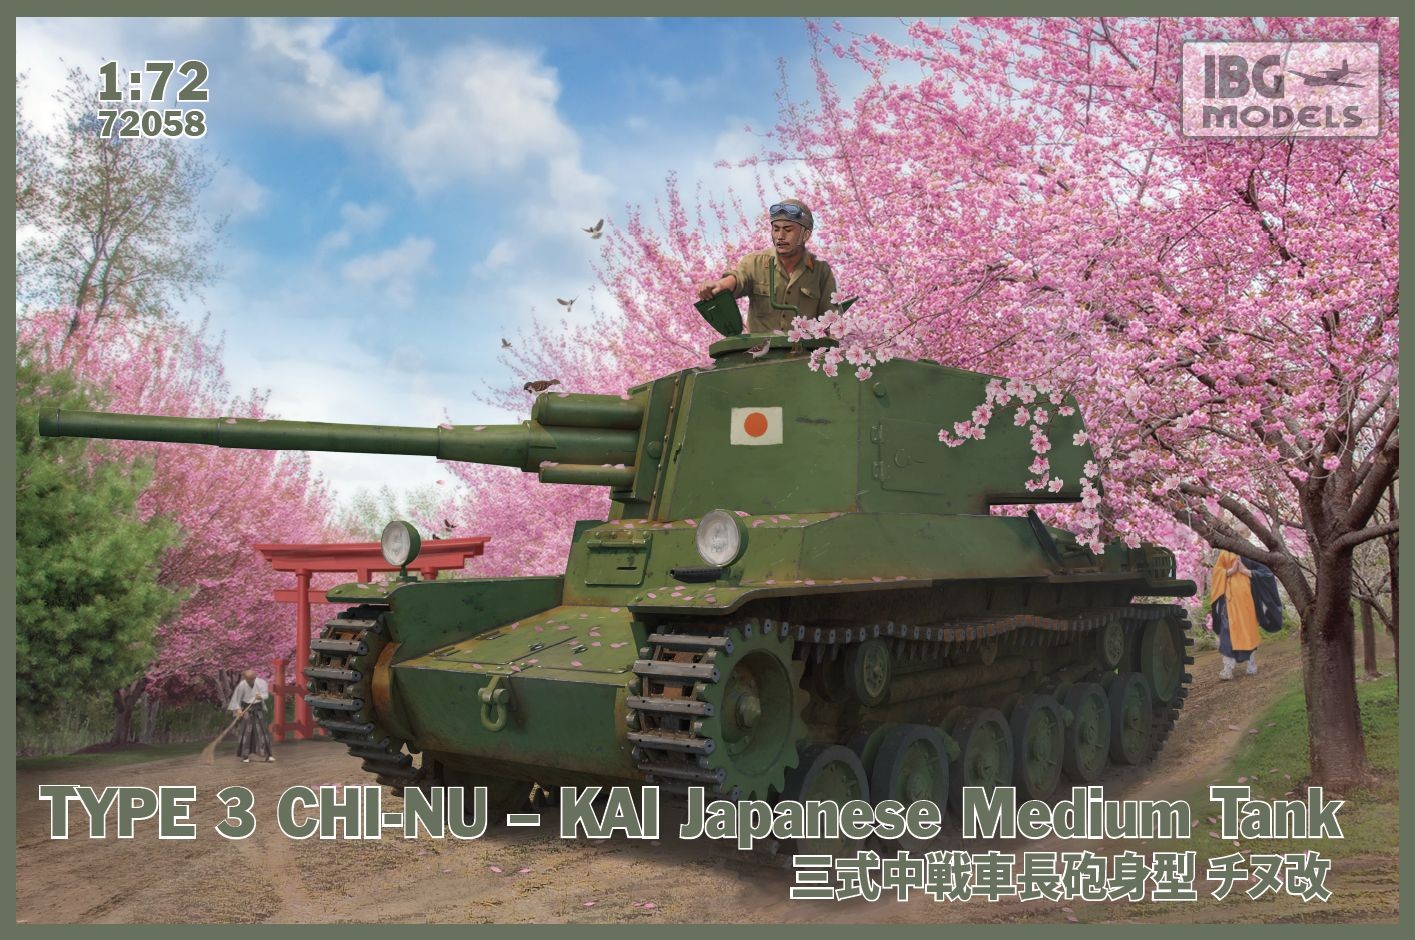 72058 IBG ModelsType 3 Chi-Nu Kai Japanese Medium Tank 1/72